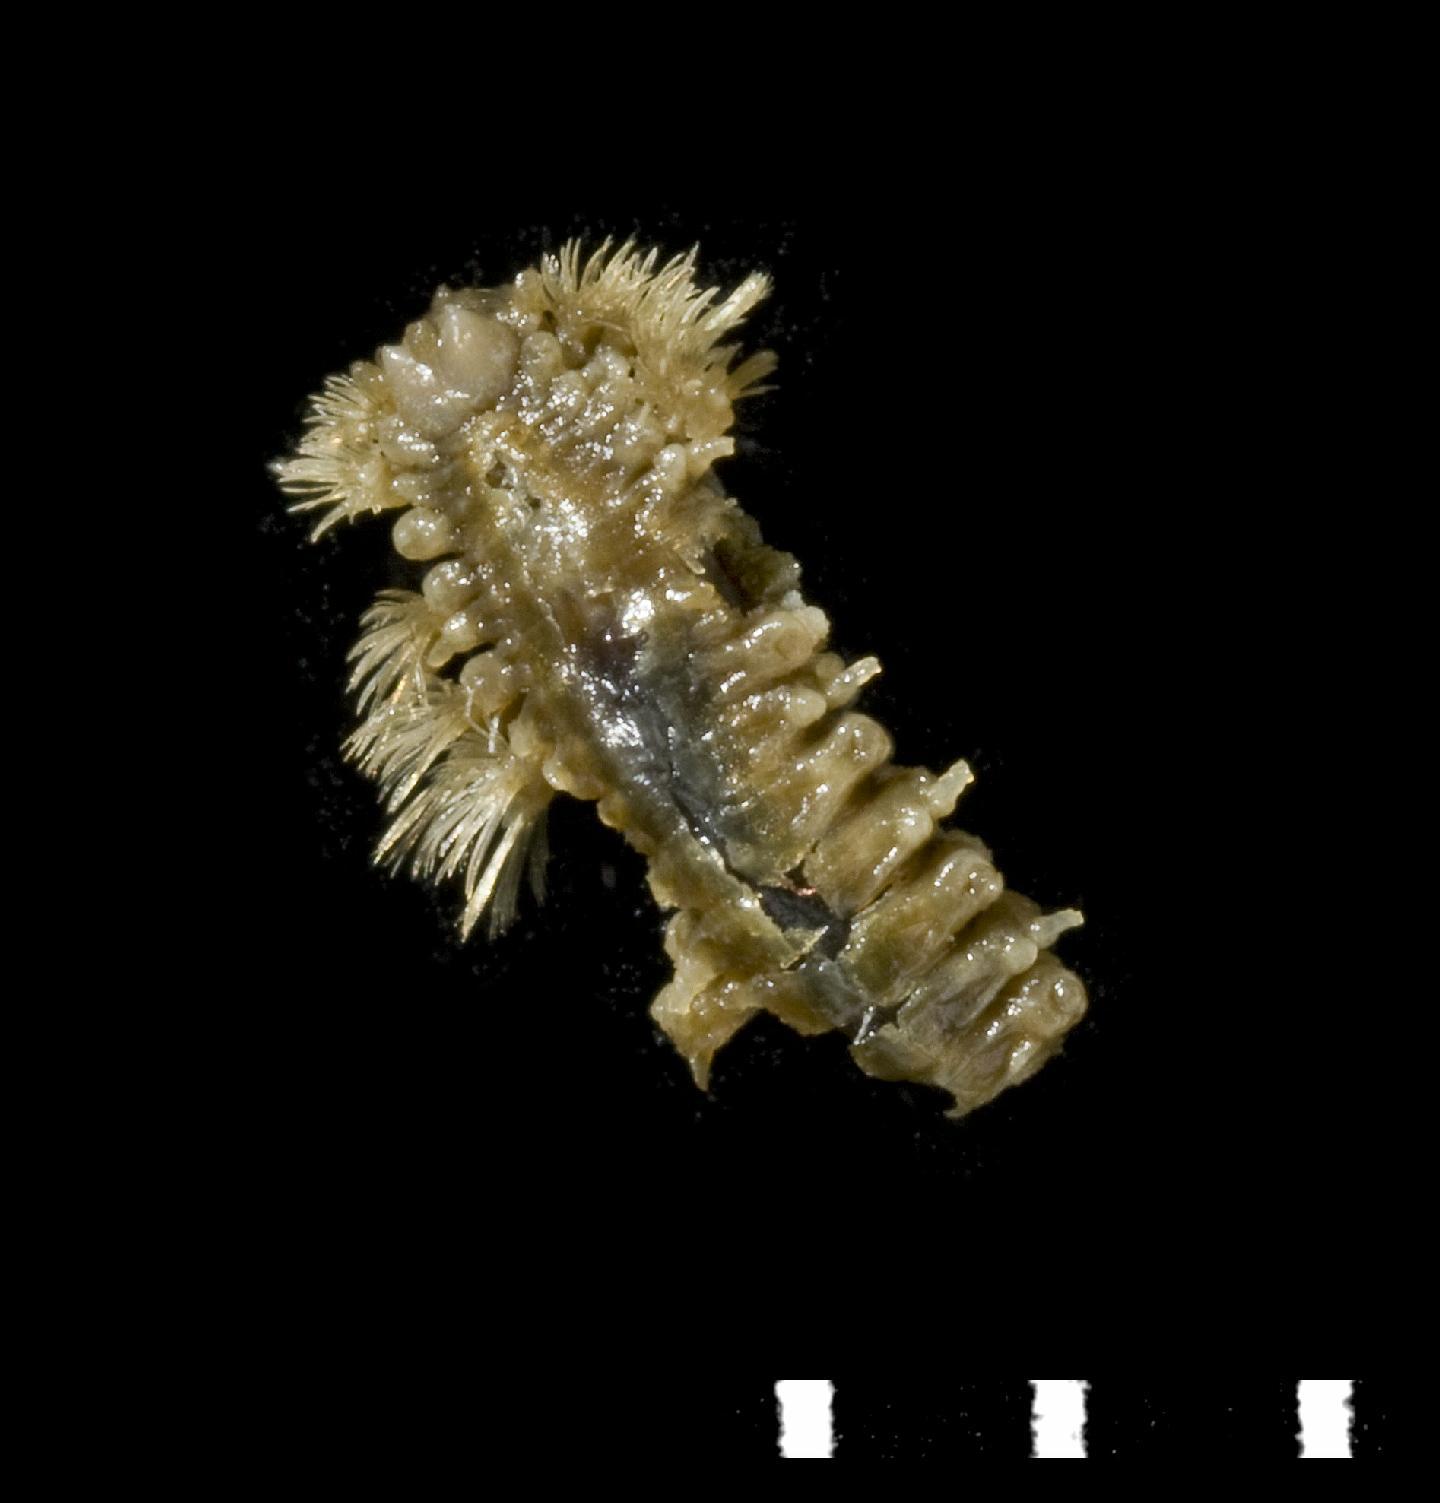 To NHMUK collection (Lagisca kermadecensis McIntosh, 1885; holotype; NHMUK:ecatalogue:3534931)